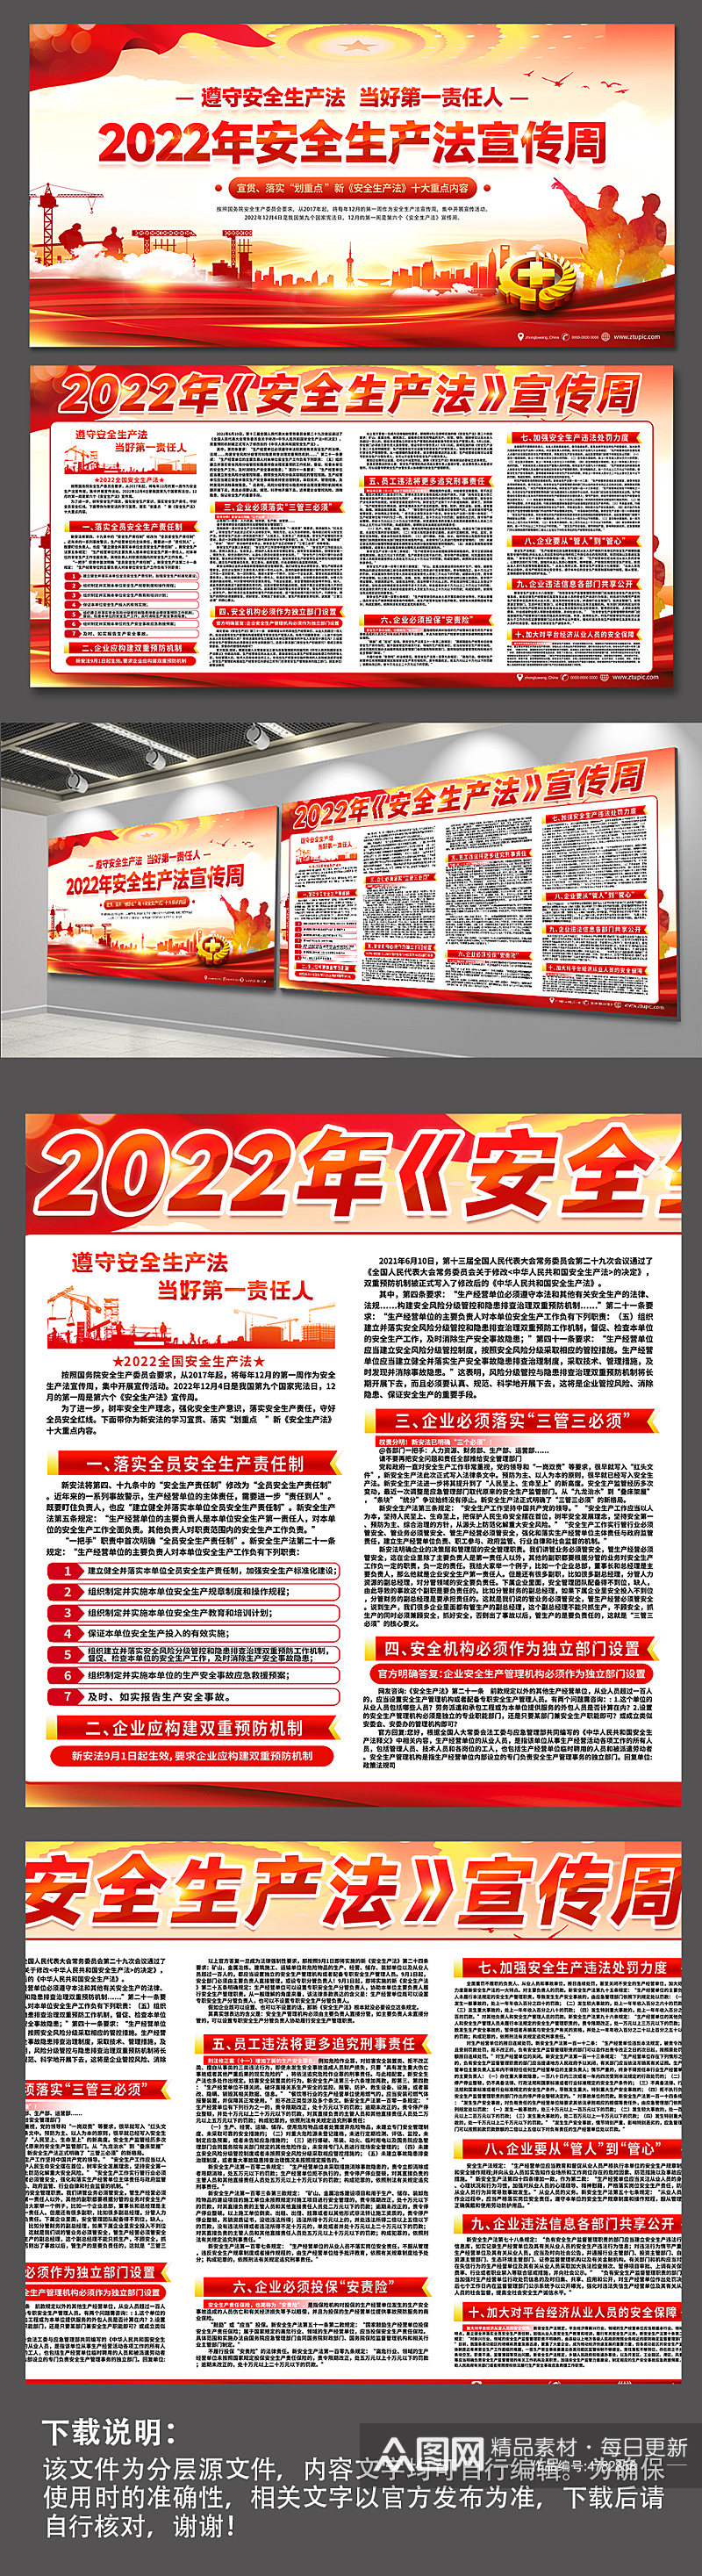 2022年安全生产法宣传周宣传展板海报素材